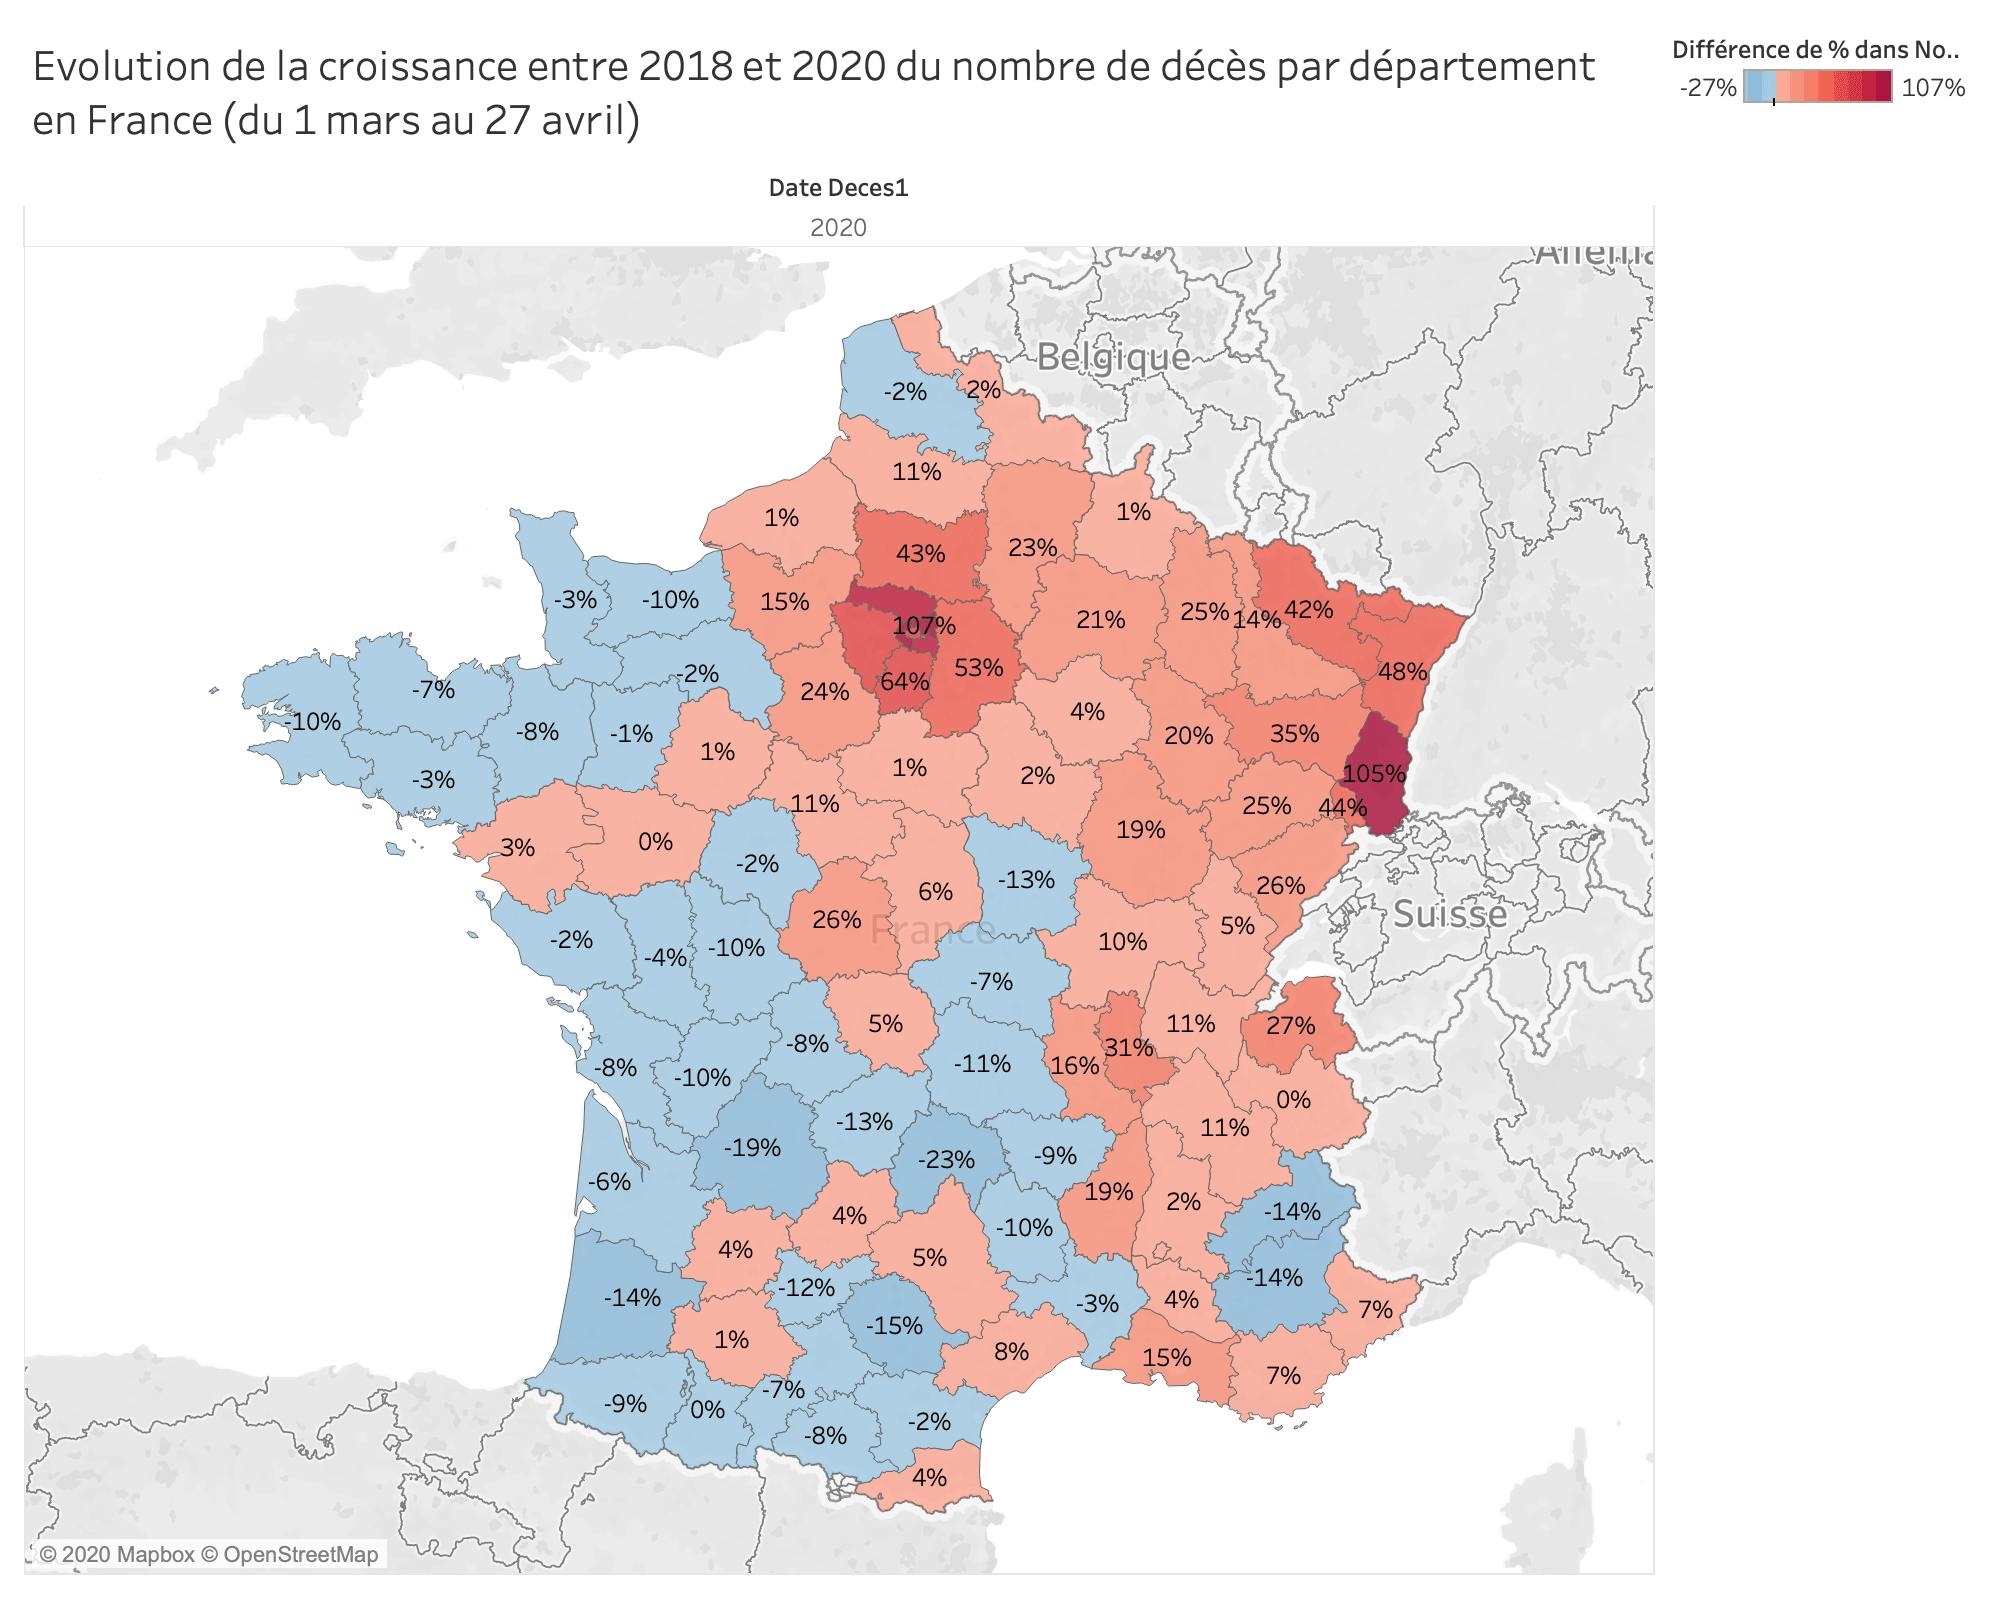 Evolution de la croissance entre 2018 et 2020 du nombre de décès par département en France (du 1 mars au 27 avril)